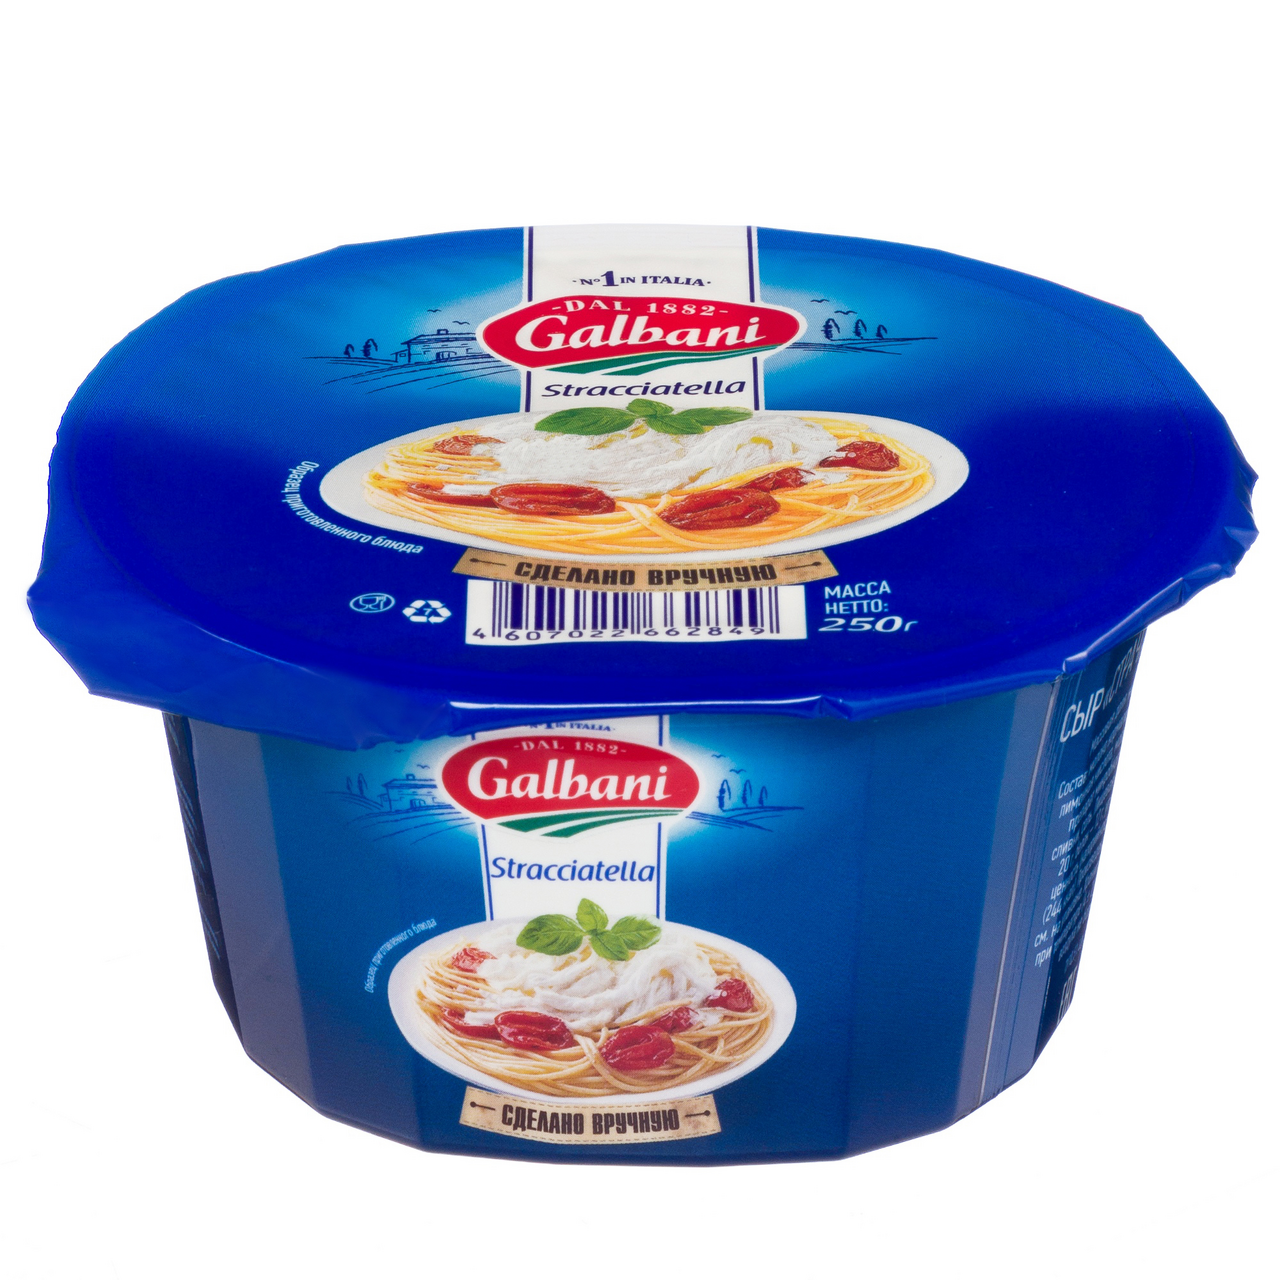 Сыр Galbani Страчателла, 250г  с доставкой на дом, цены в .